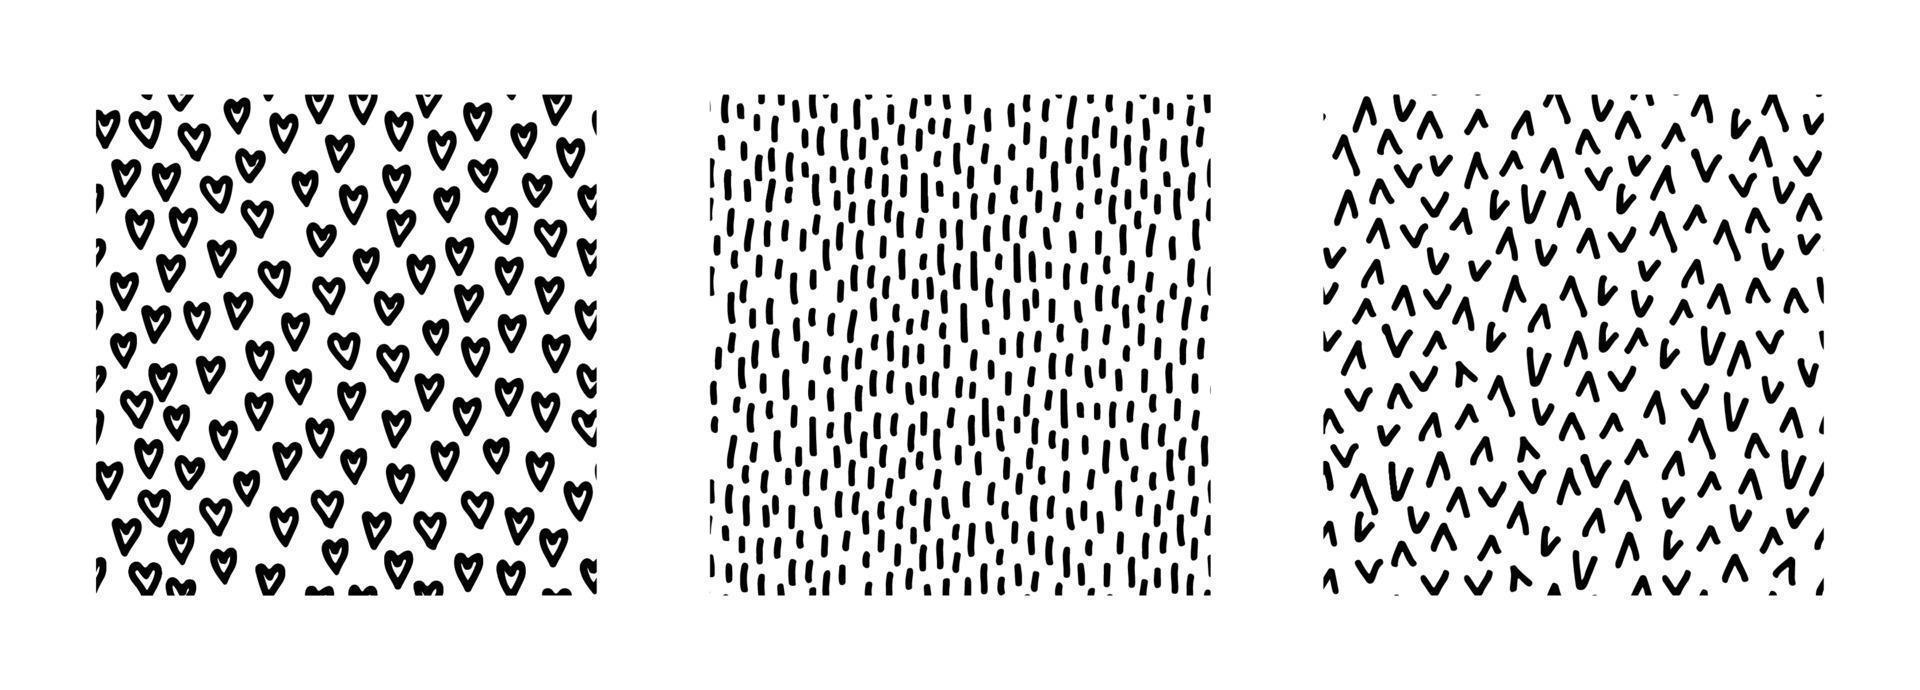 reeks van abstract naadloos patronen met texturen. zwart en wit gemakkelijk achtergronden met krabbels. vector hand getekend illustratie. perfect voor decoraties, behang, omhulsel papier, kleding stof, afdrukken.